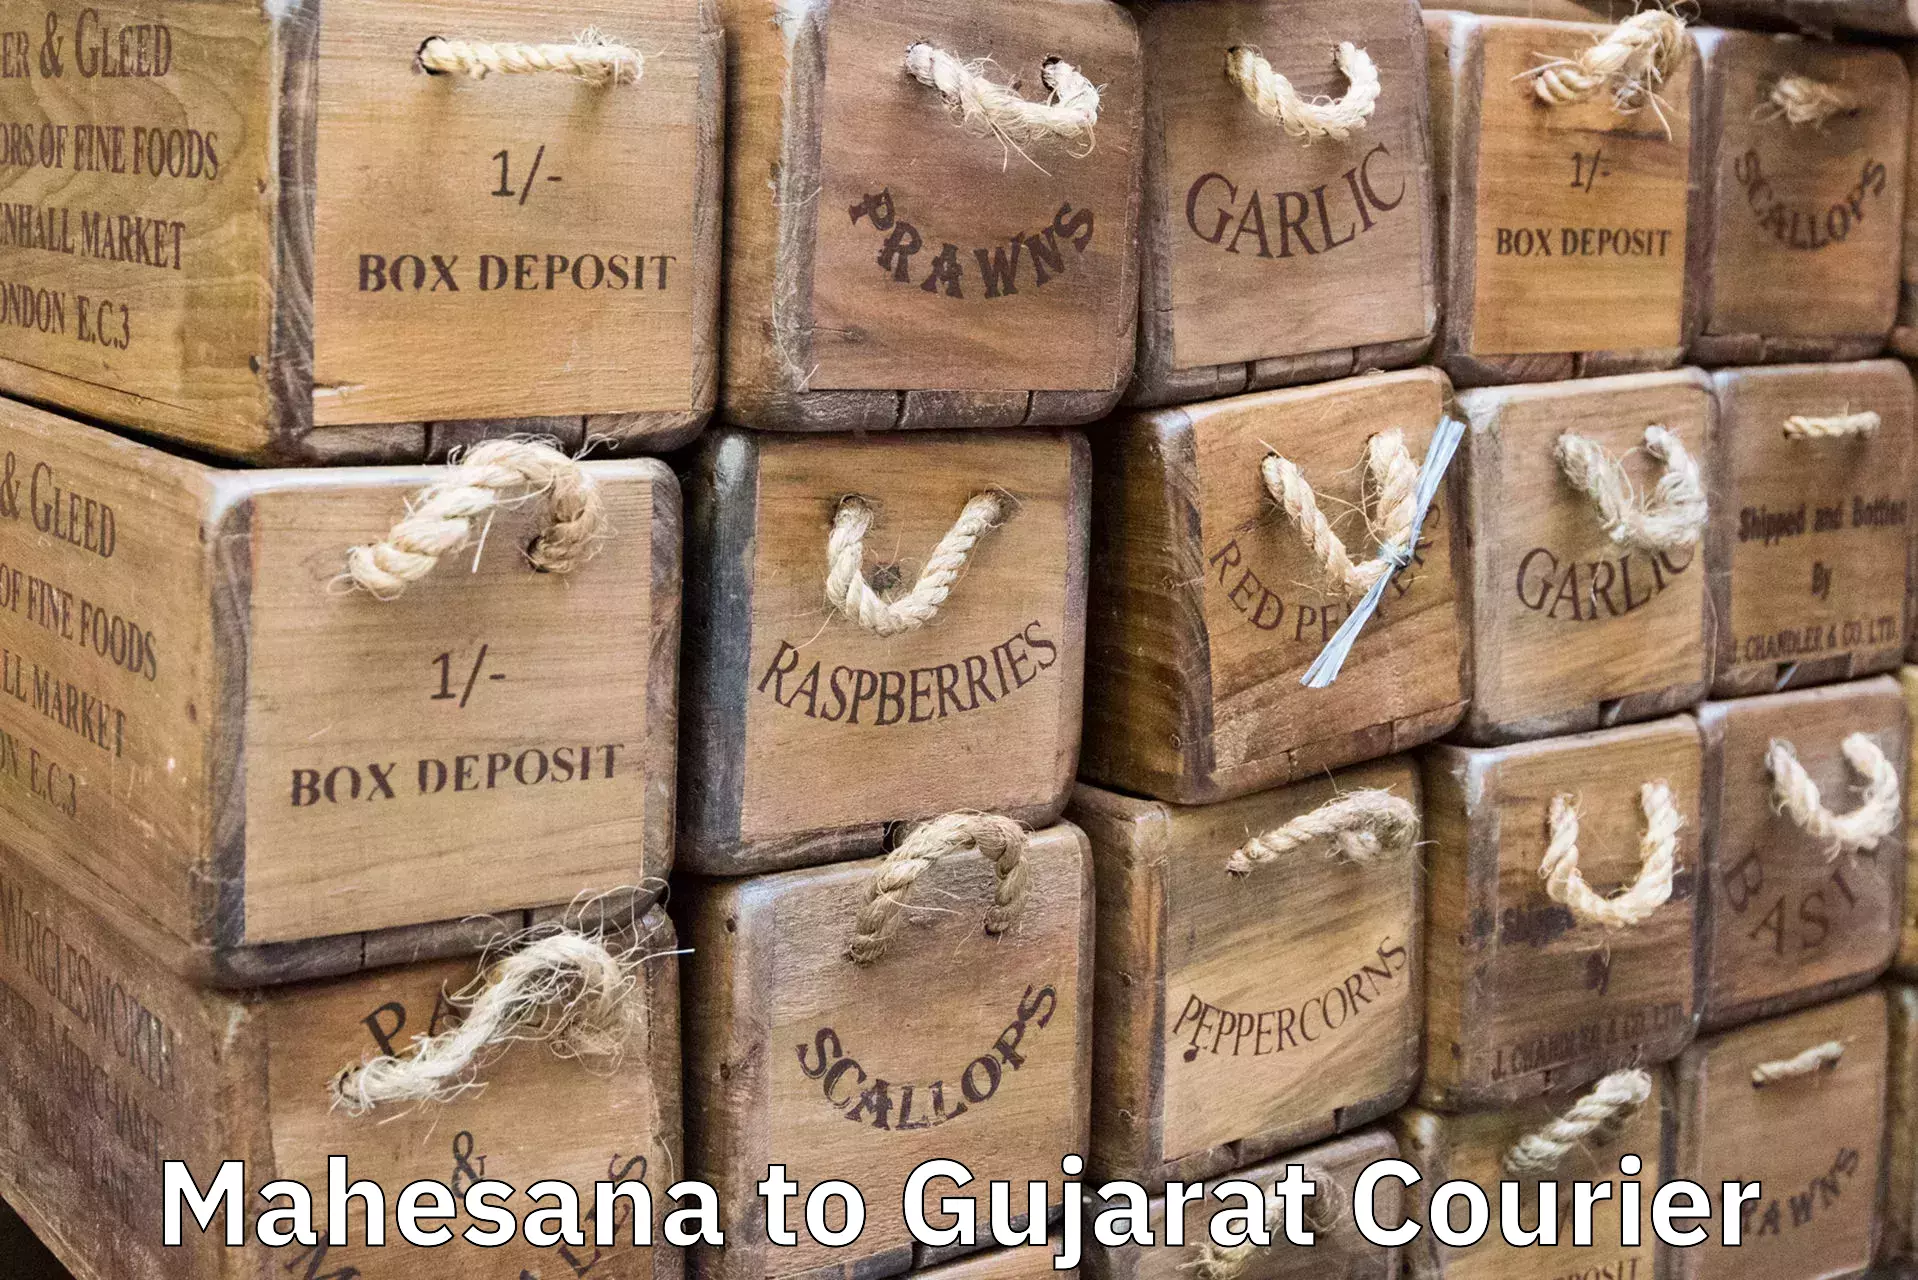 Luggage delivery rates Mahesana to Bhiloda